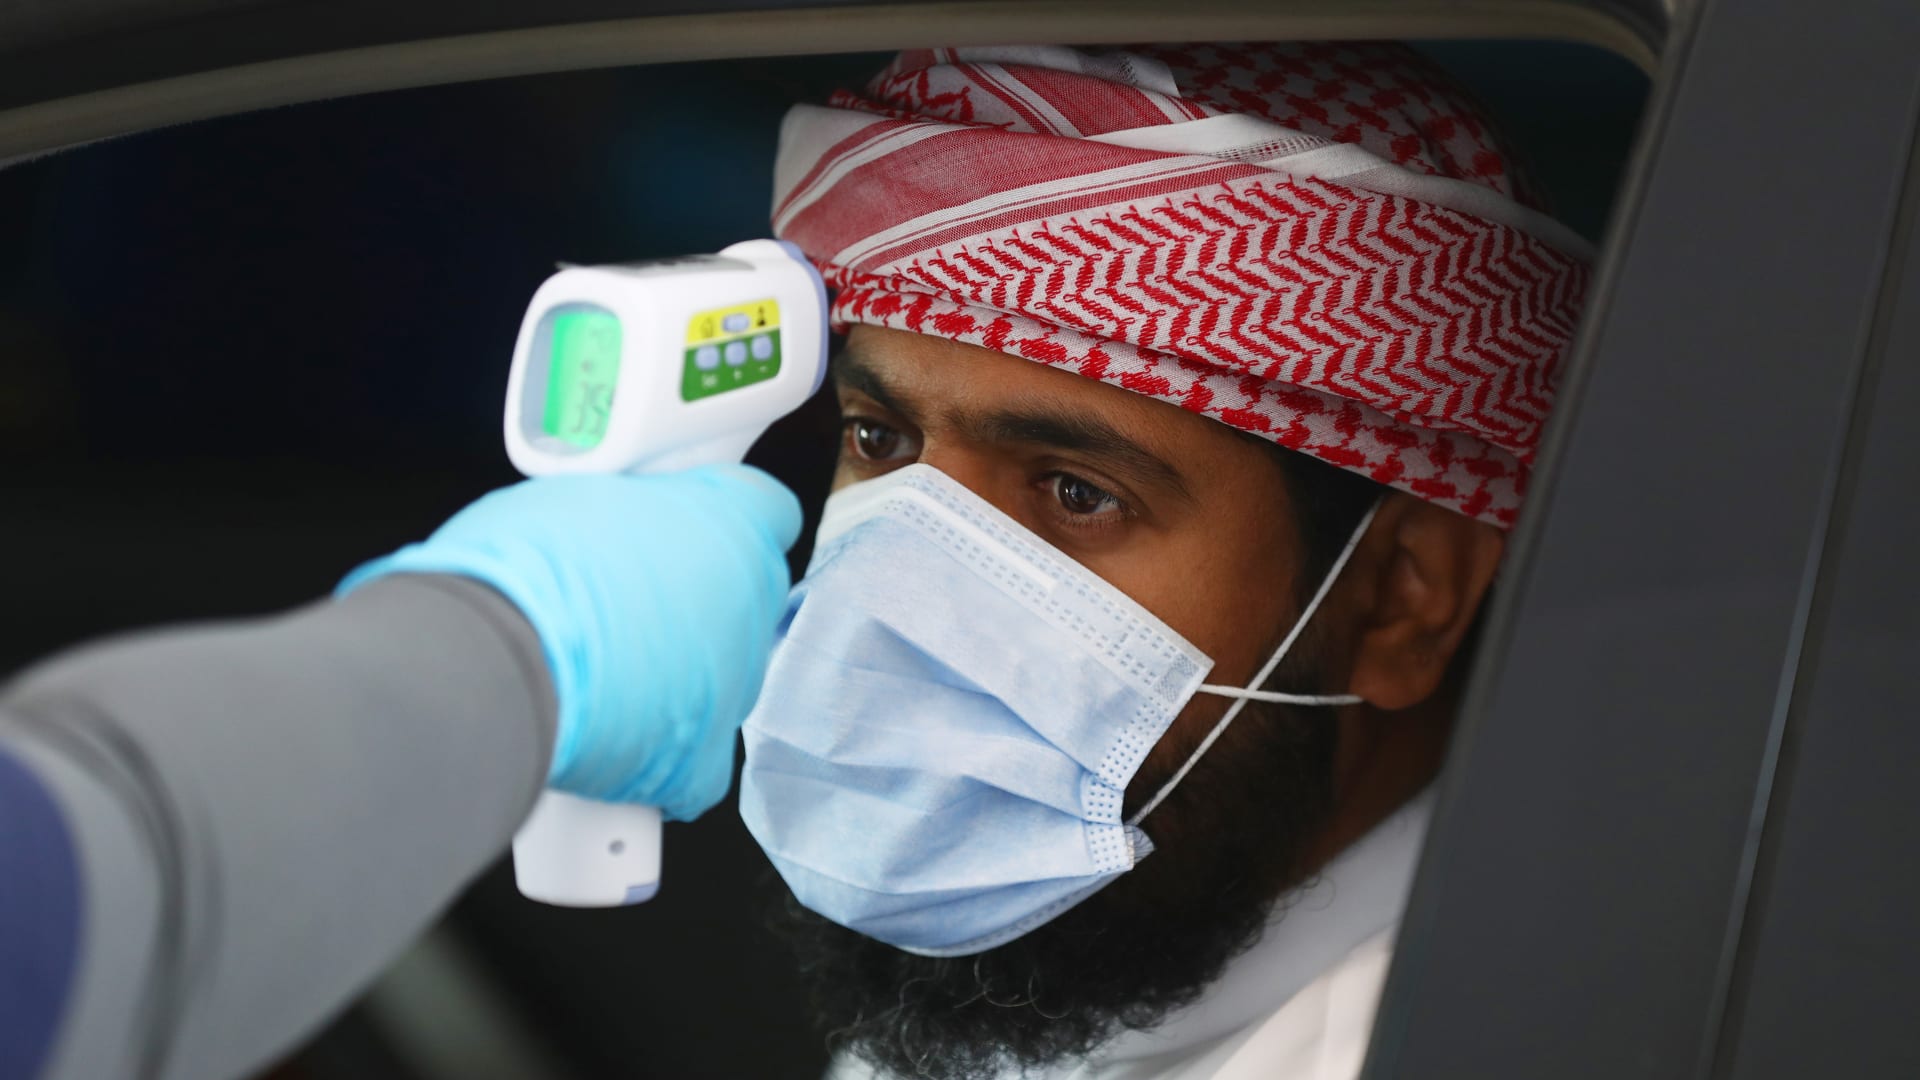 بعد شحه عالمياً.. الإمارات تتعمق في صنع أقنعة N-95 لمواجهة فيروس كورونا